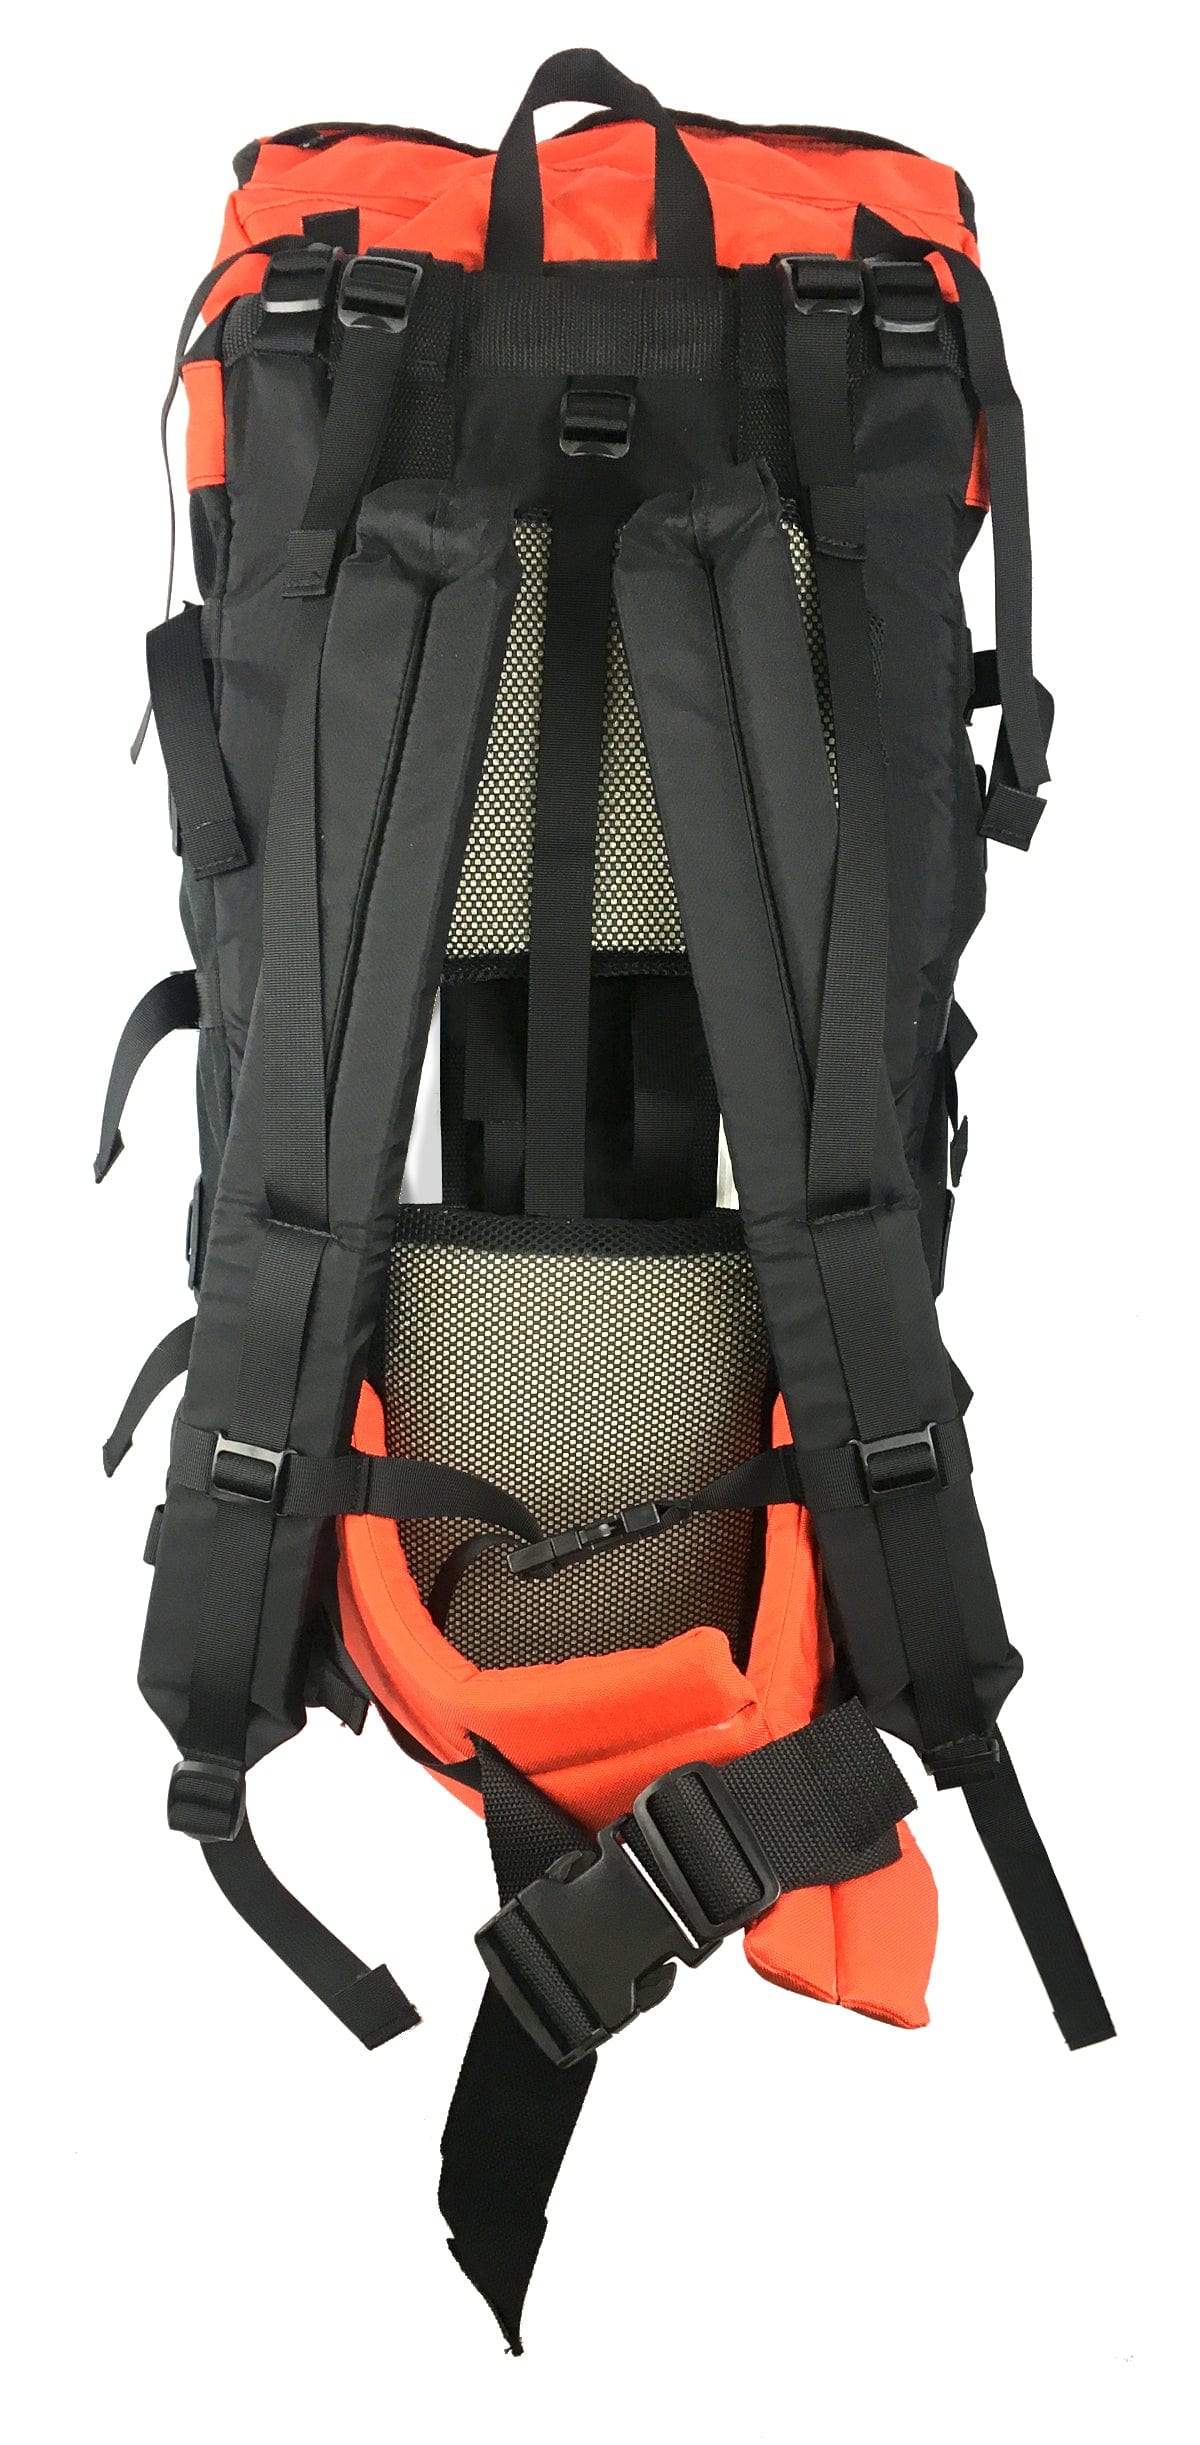 Made in USA HEADWALL Big Hiking Backpack Large Hiking Backpacks